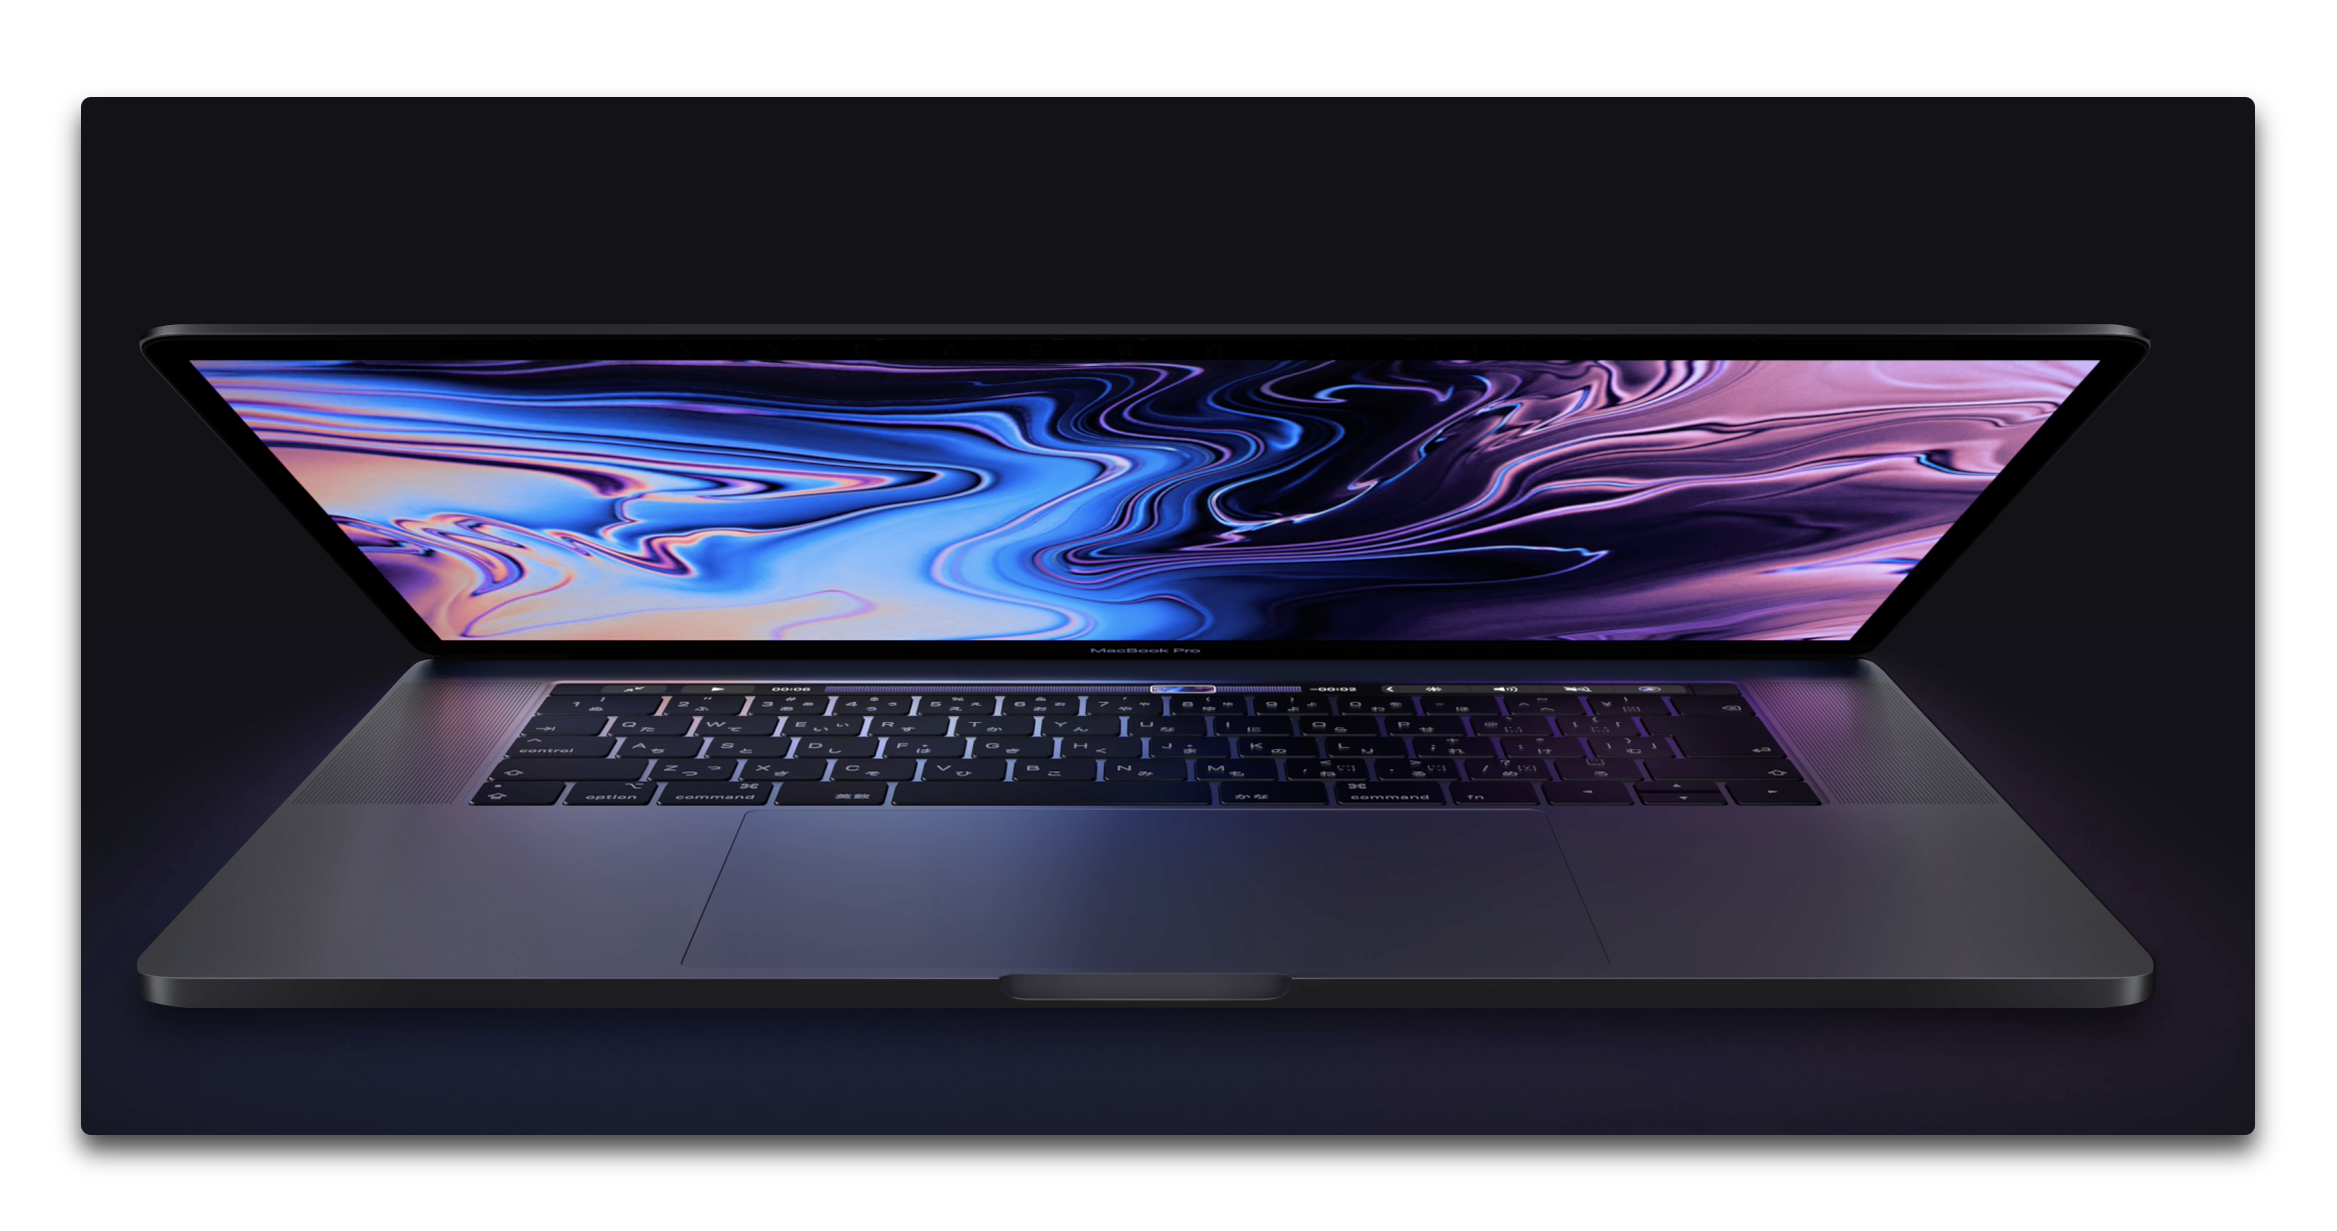 T2チップ搭載したMacBook Pro 2018、電源コードを接続しながら同時にMacの電源ボタンを押すと、ファンが高速回転する